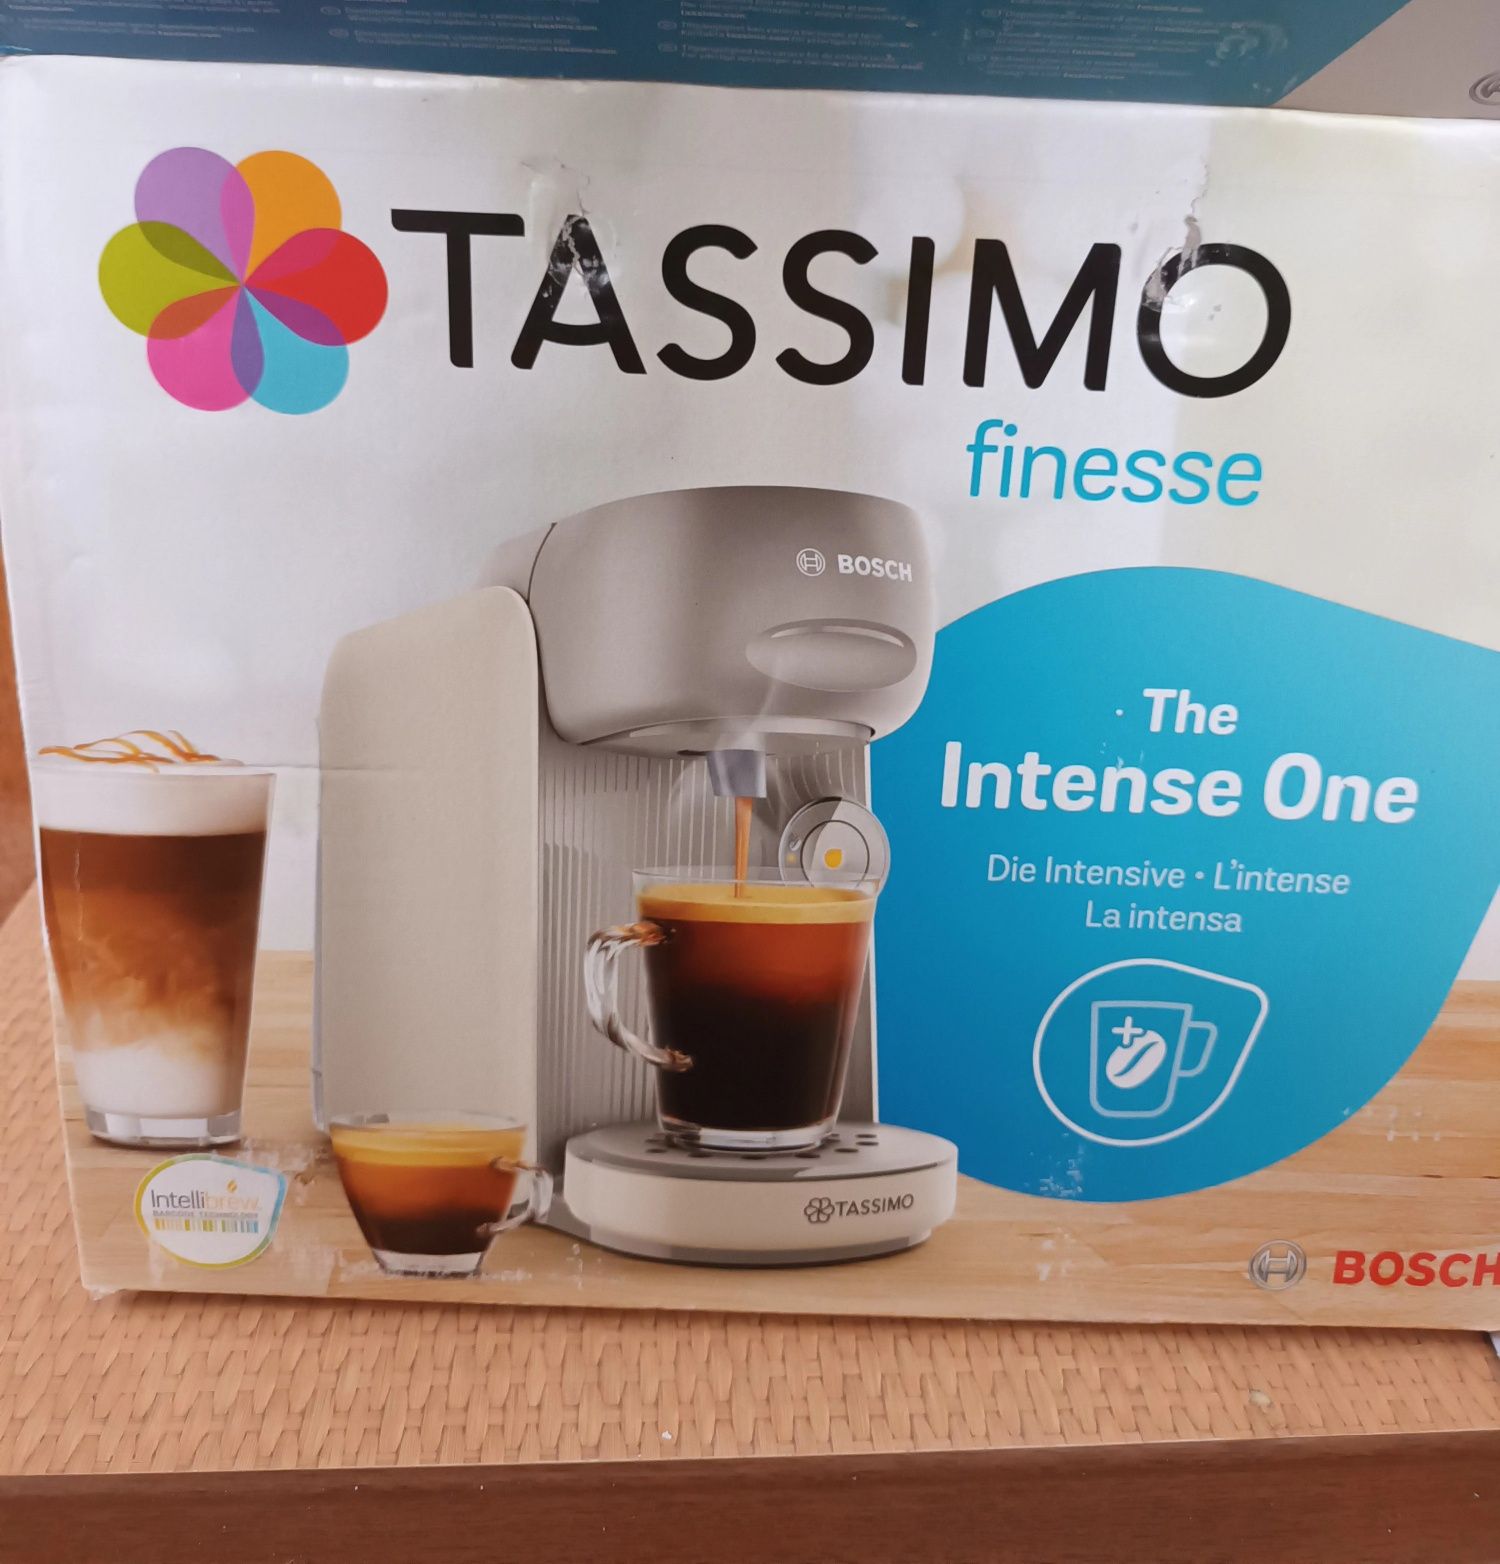 Кофемашина  Tassimo finesse Bosch